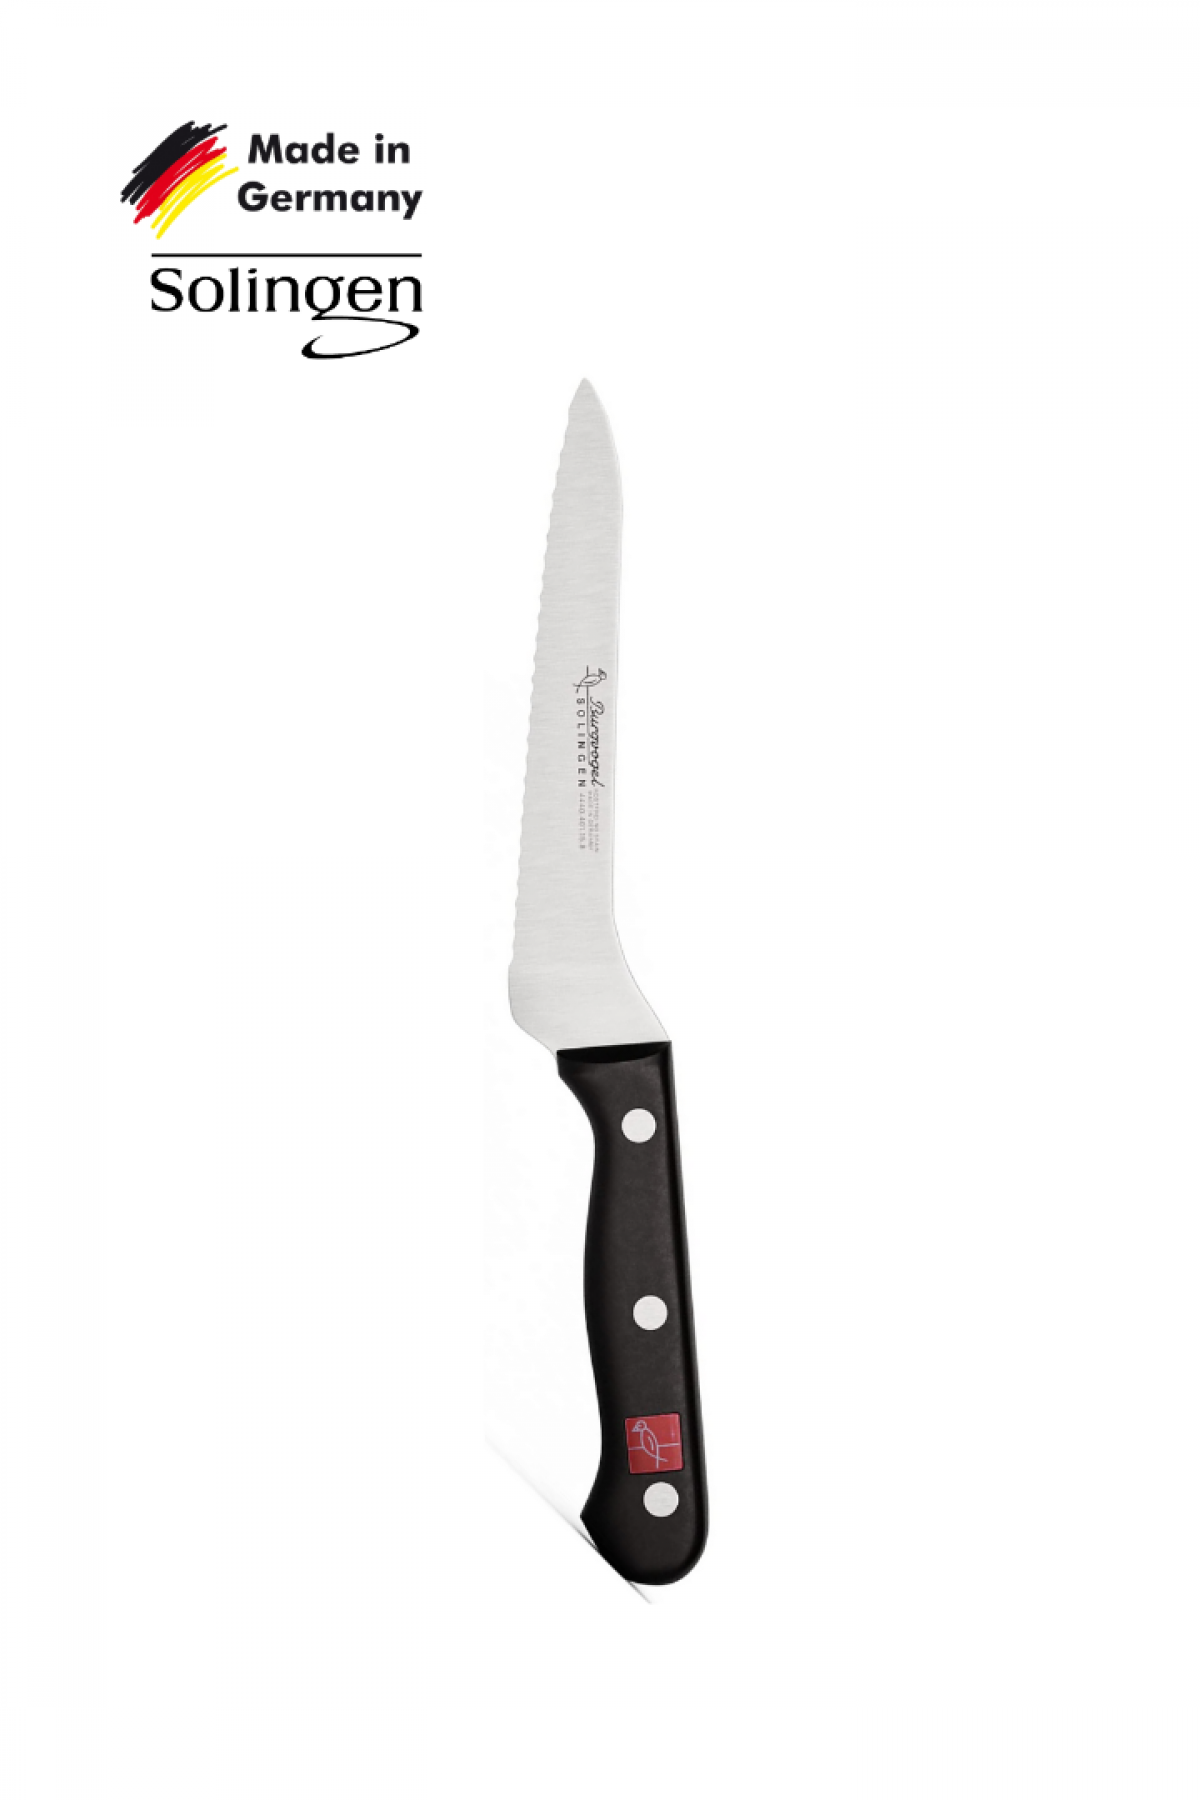 Solingen Burgvogel Basic SERIE4000 20 cm Donmuş Gıda-Ekmek Bıçağı